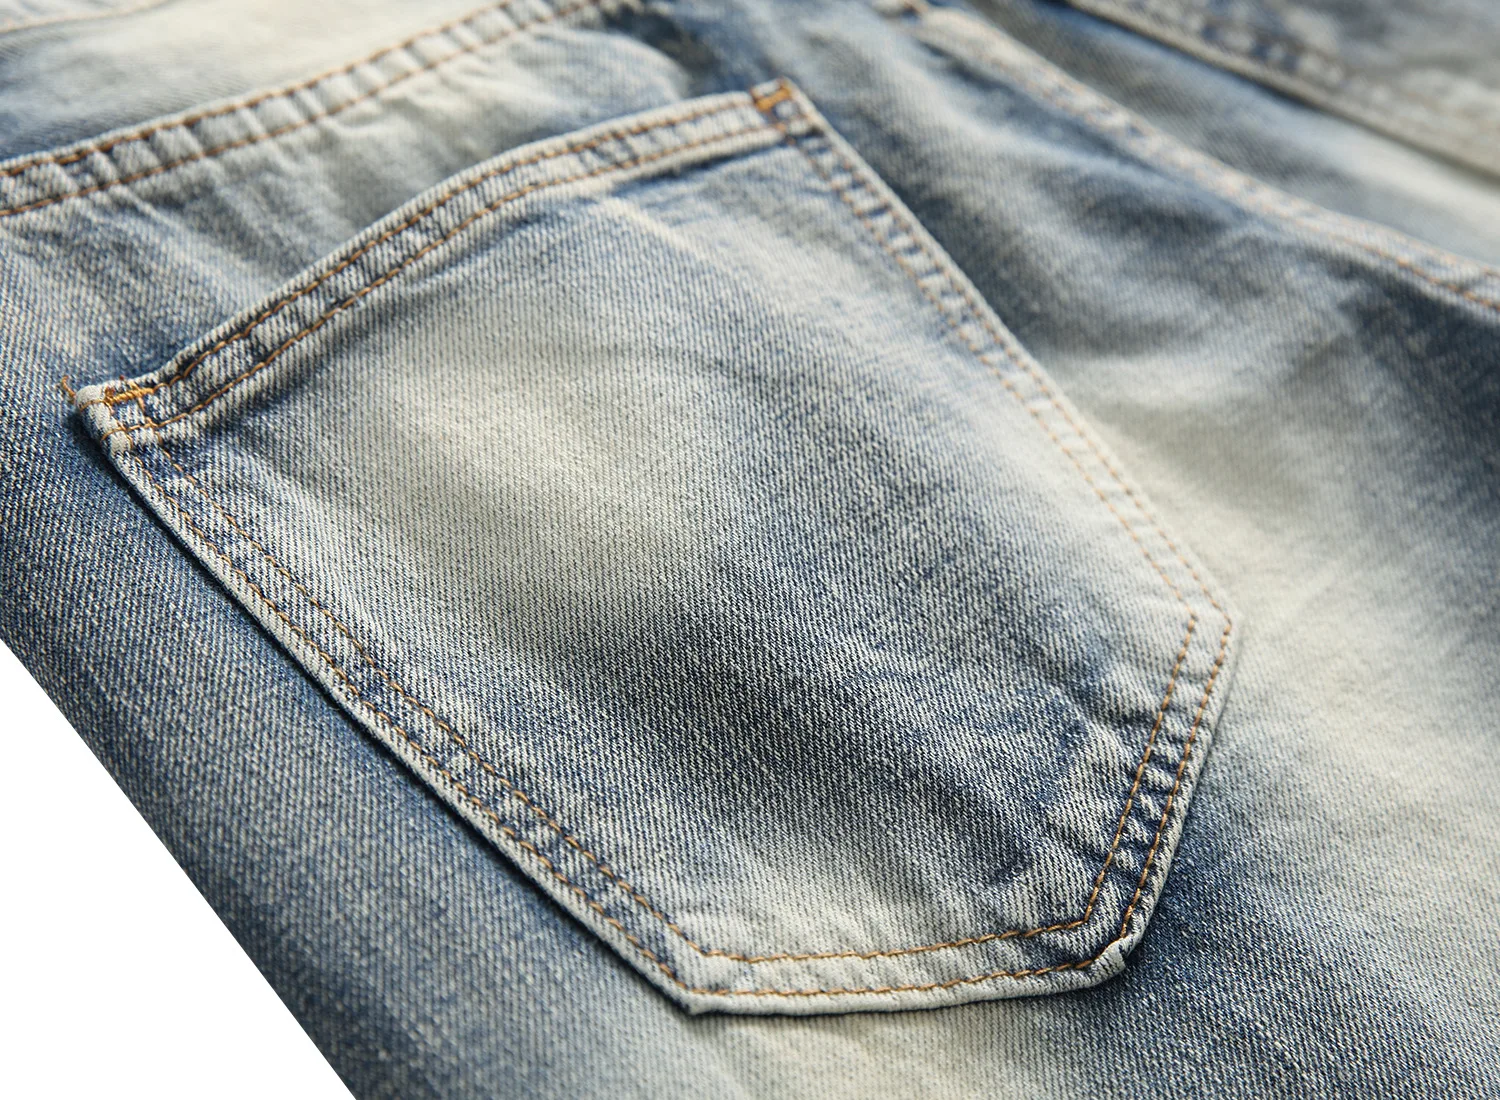 Gersri мужские джинсы стрейч рваные модные джинсы до колена с дырками для мужчин брендовые байкерские хлопковые брюки с дырками